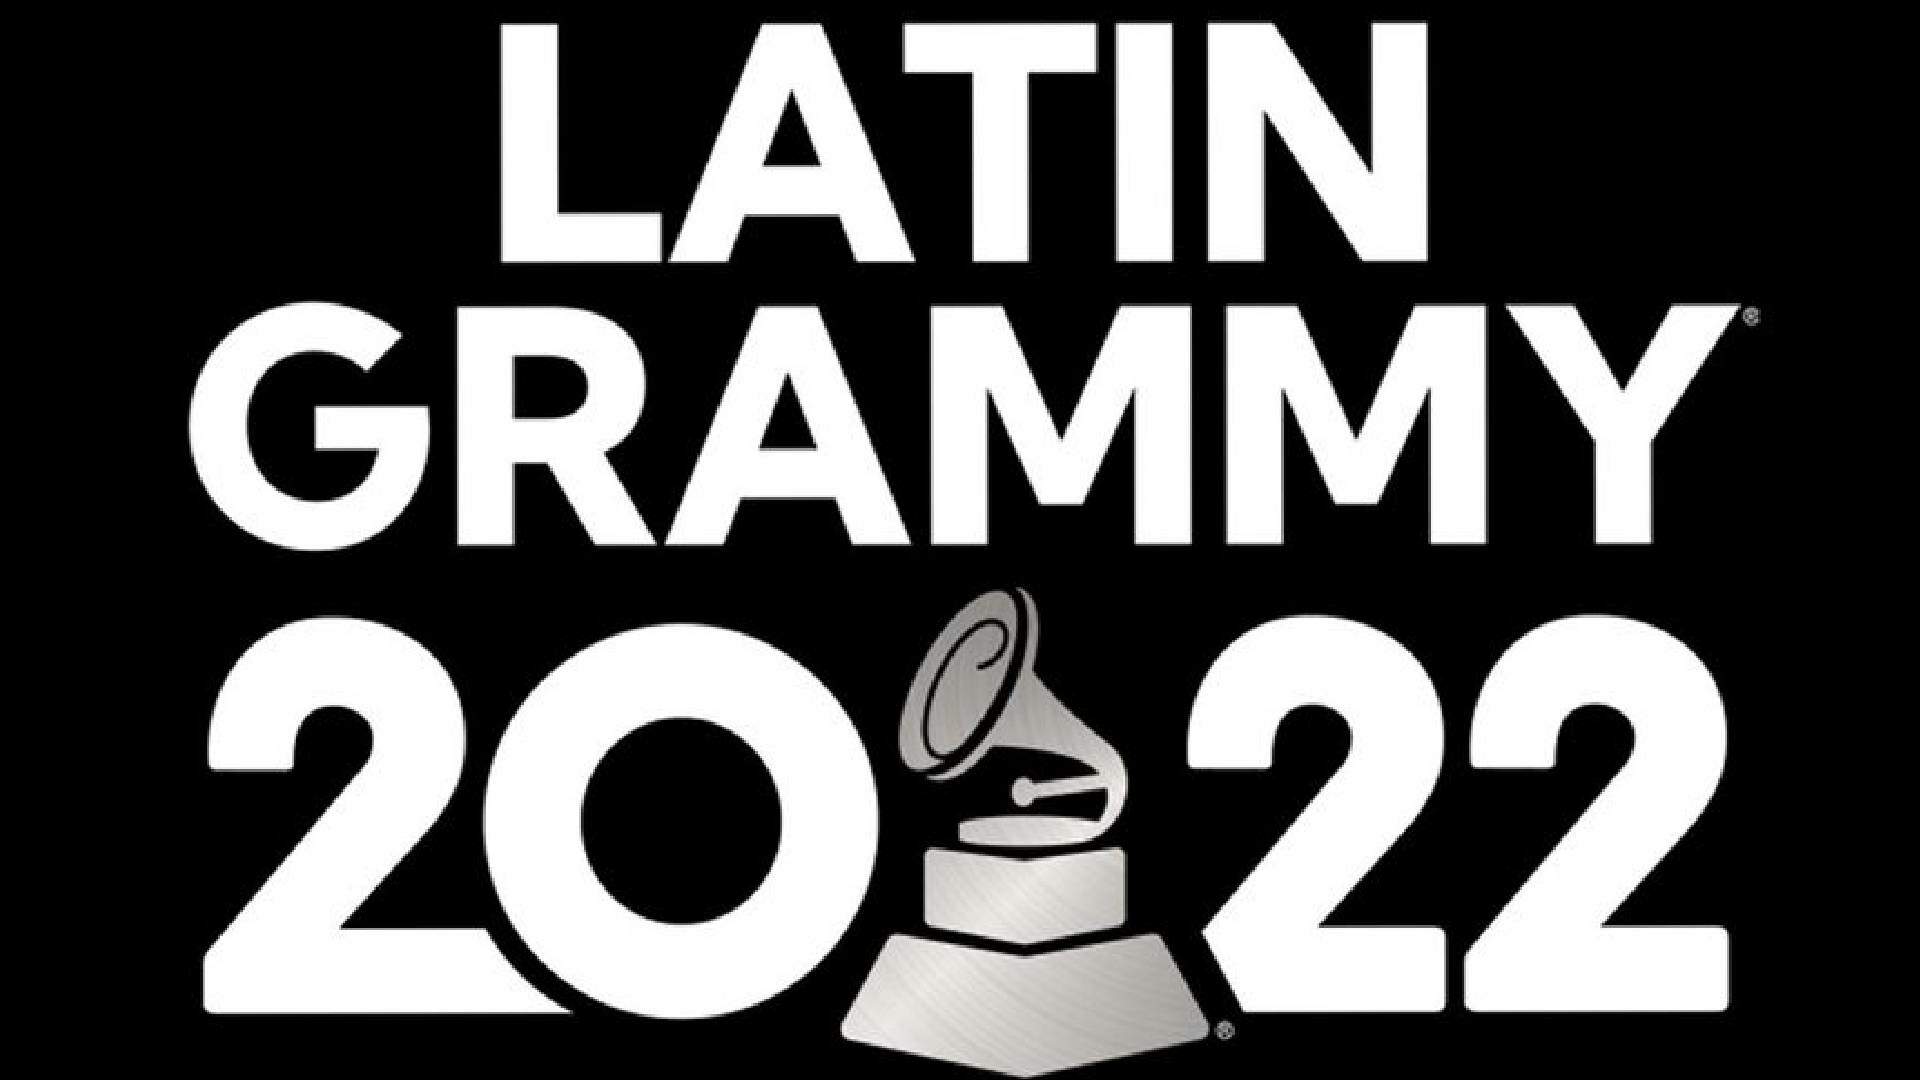 Grammy Latino 2022: premiação anuncia detalhes da cerimônia com presença de cantoras brasileiras